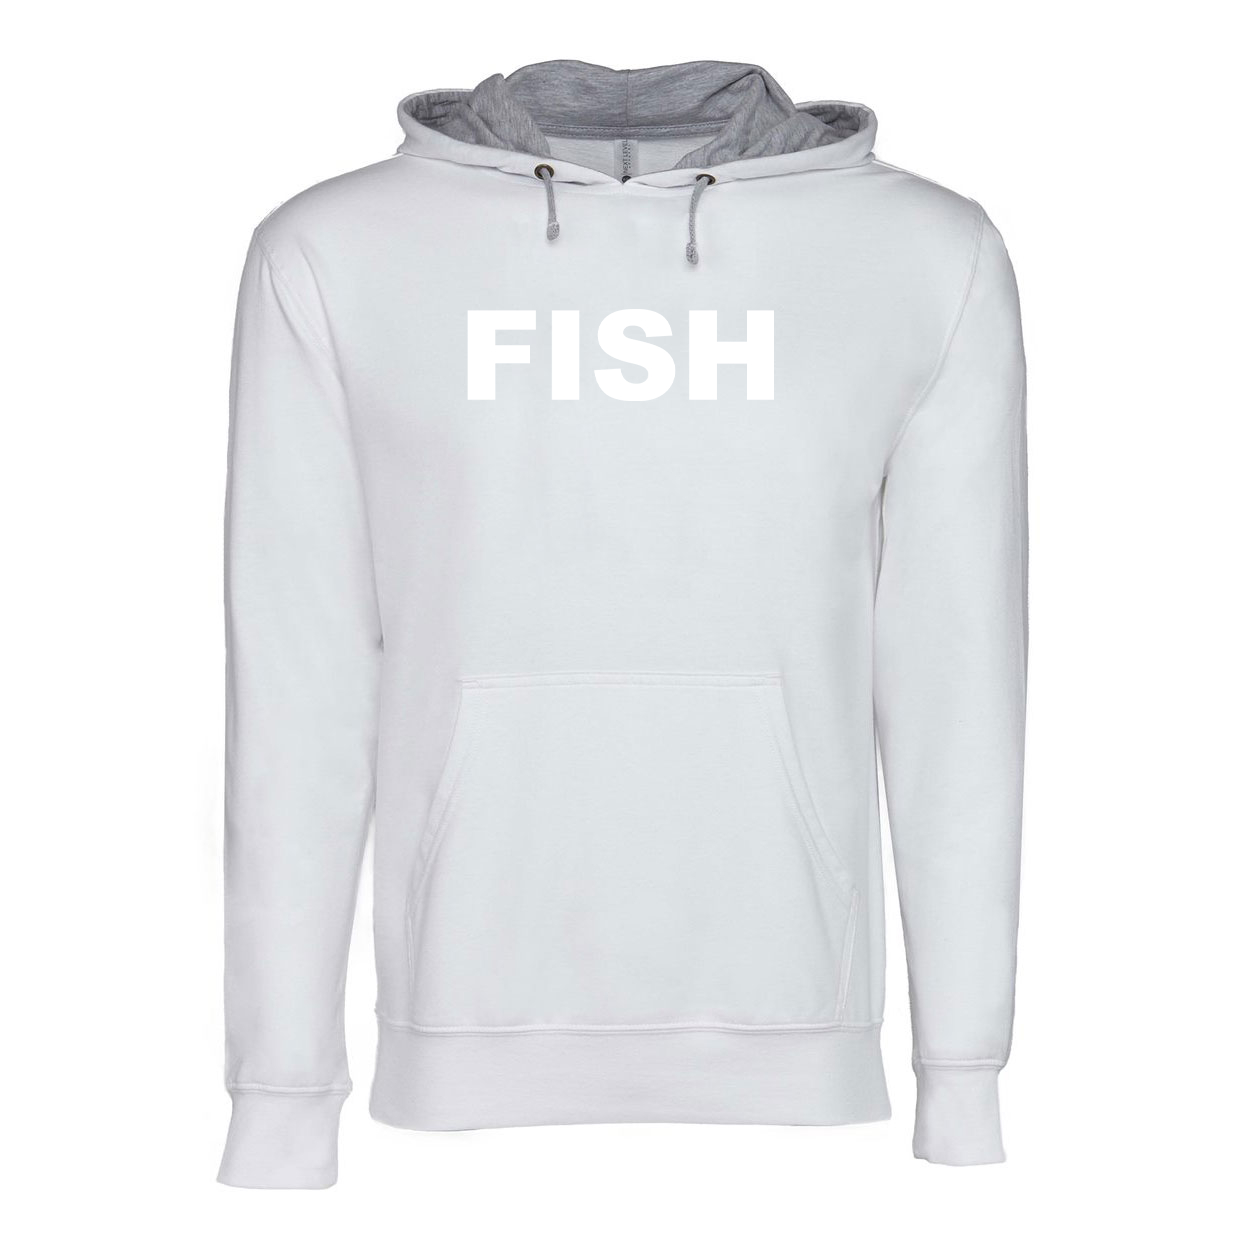 Fish Brand Logo Classic Lightweight Sweatshirt White/Heather Gray 